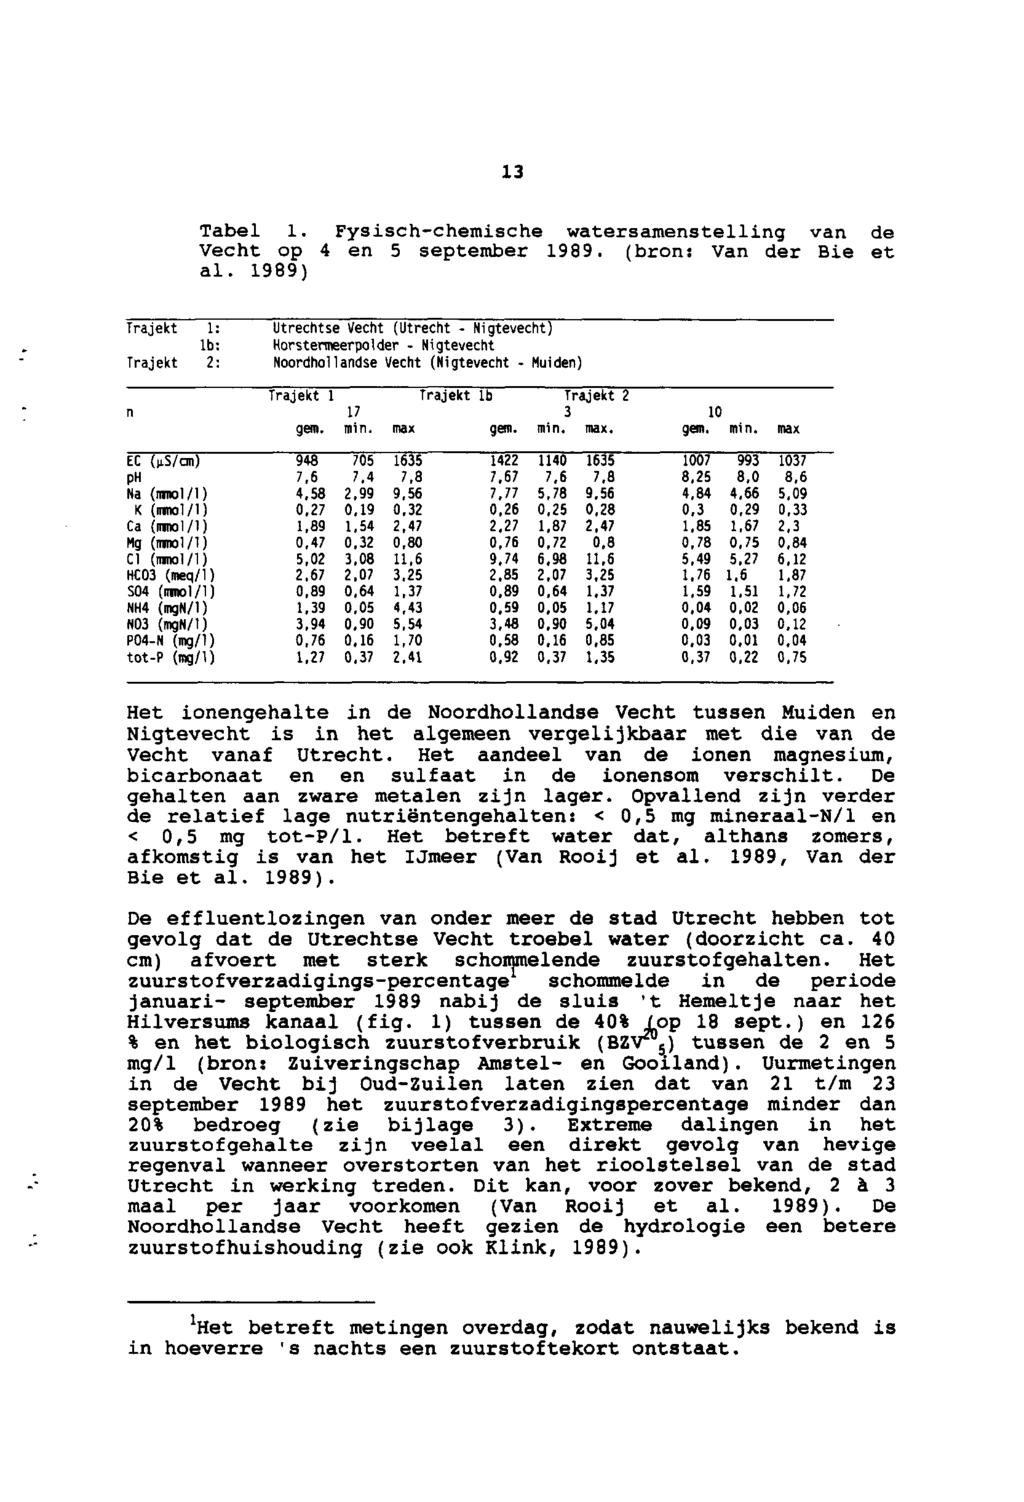 Tabel Fysisch-chemische watersamenstelling van de Vecht op en september 99 (bron:van der Bie et al 99) Trajekt : lb: Trajekt : Utrechtse Vecht (Utrecht- Nigtevecht) Horstermeerpolder - N